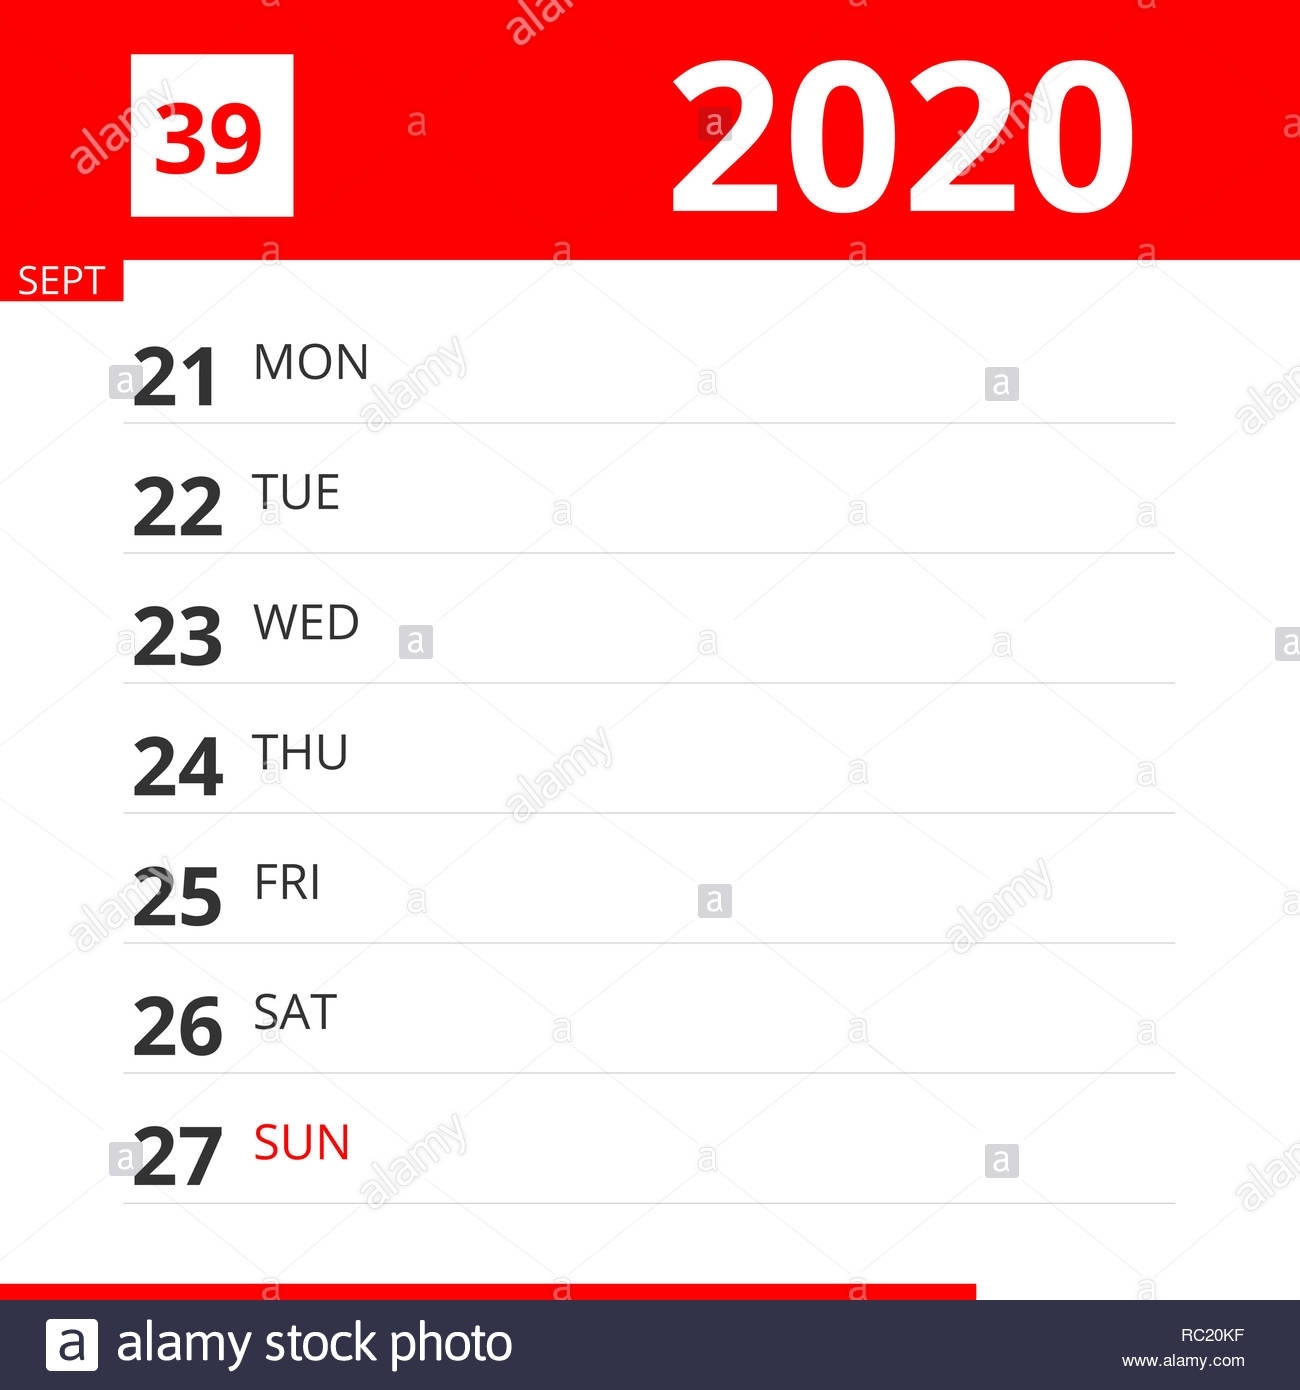 Calendar Planner For Week 39 In 2020, Ends September 27 2020 Calendar Week 39